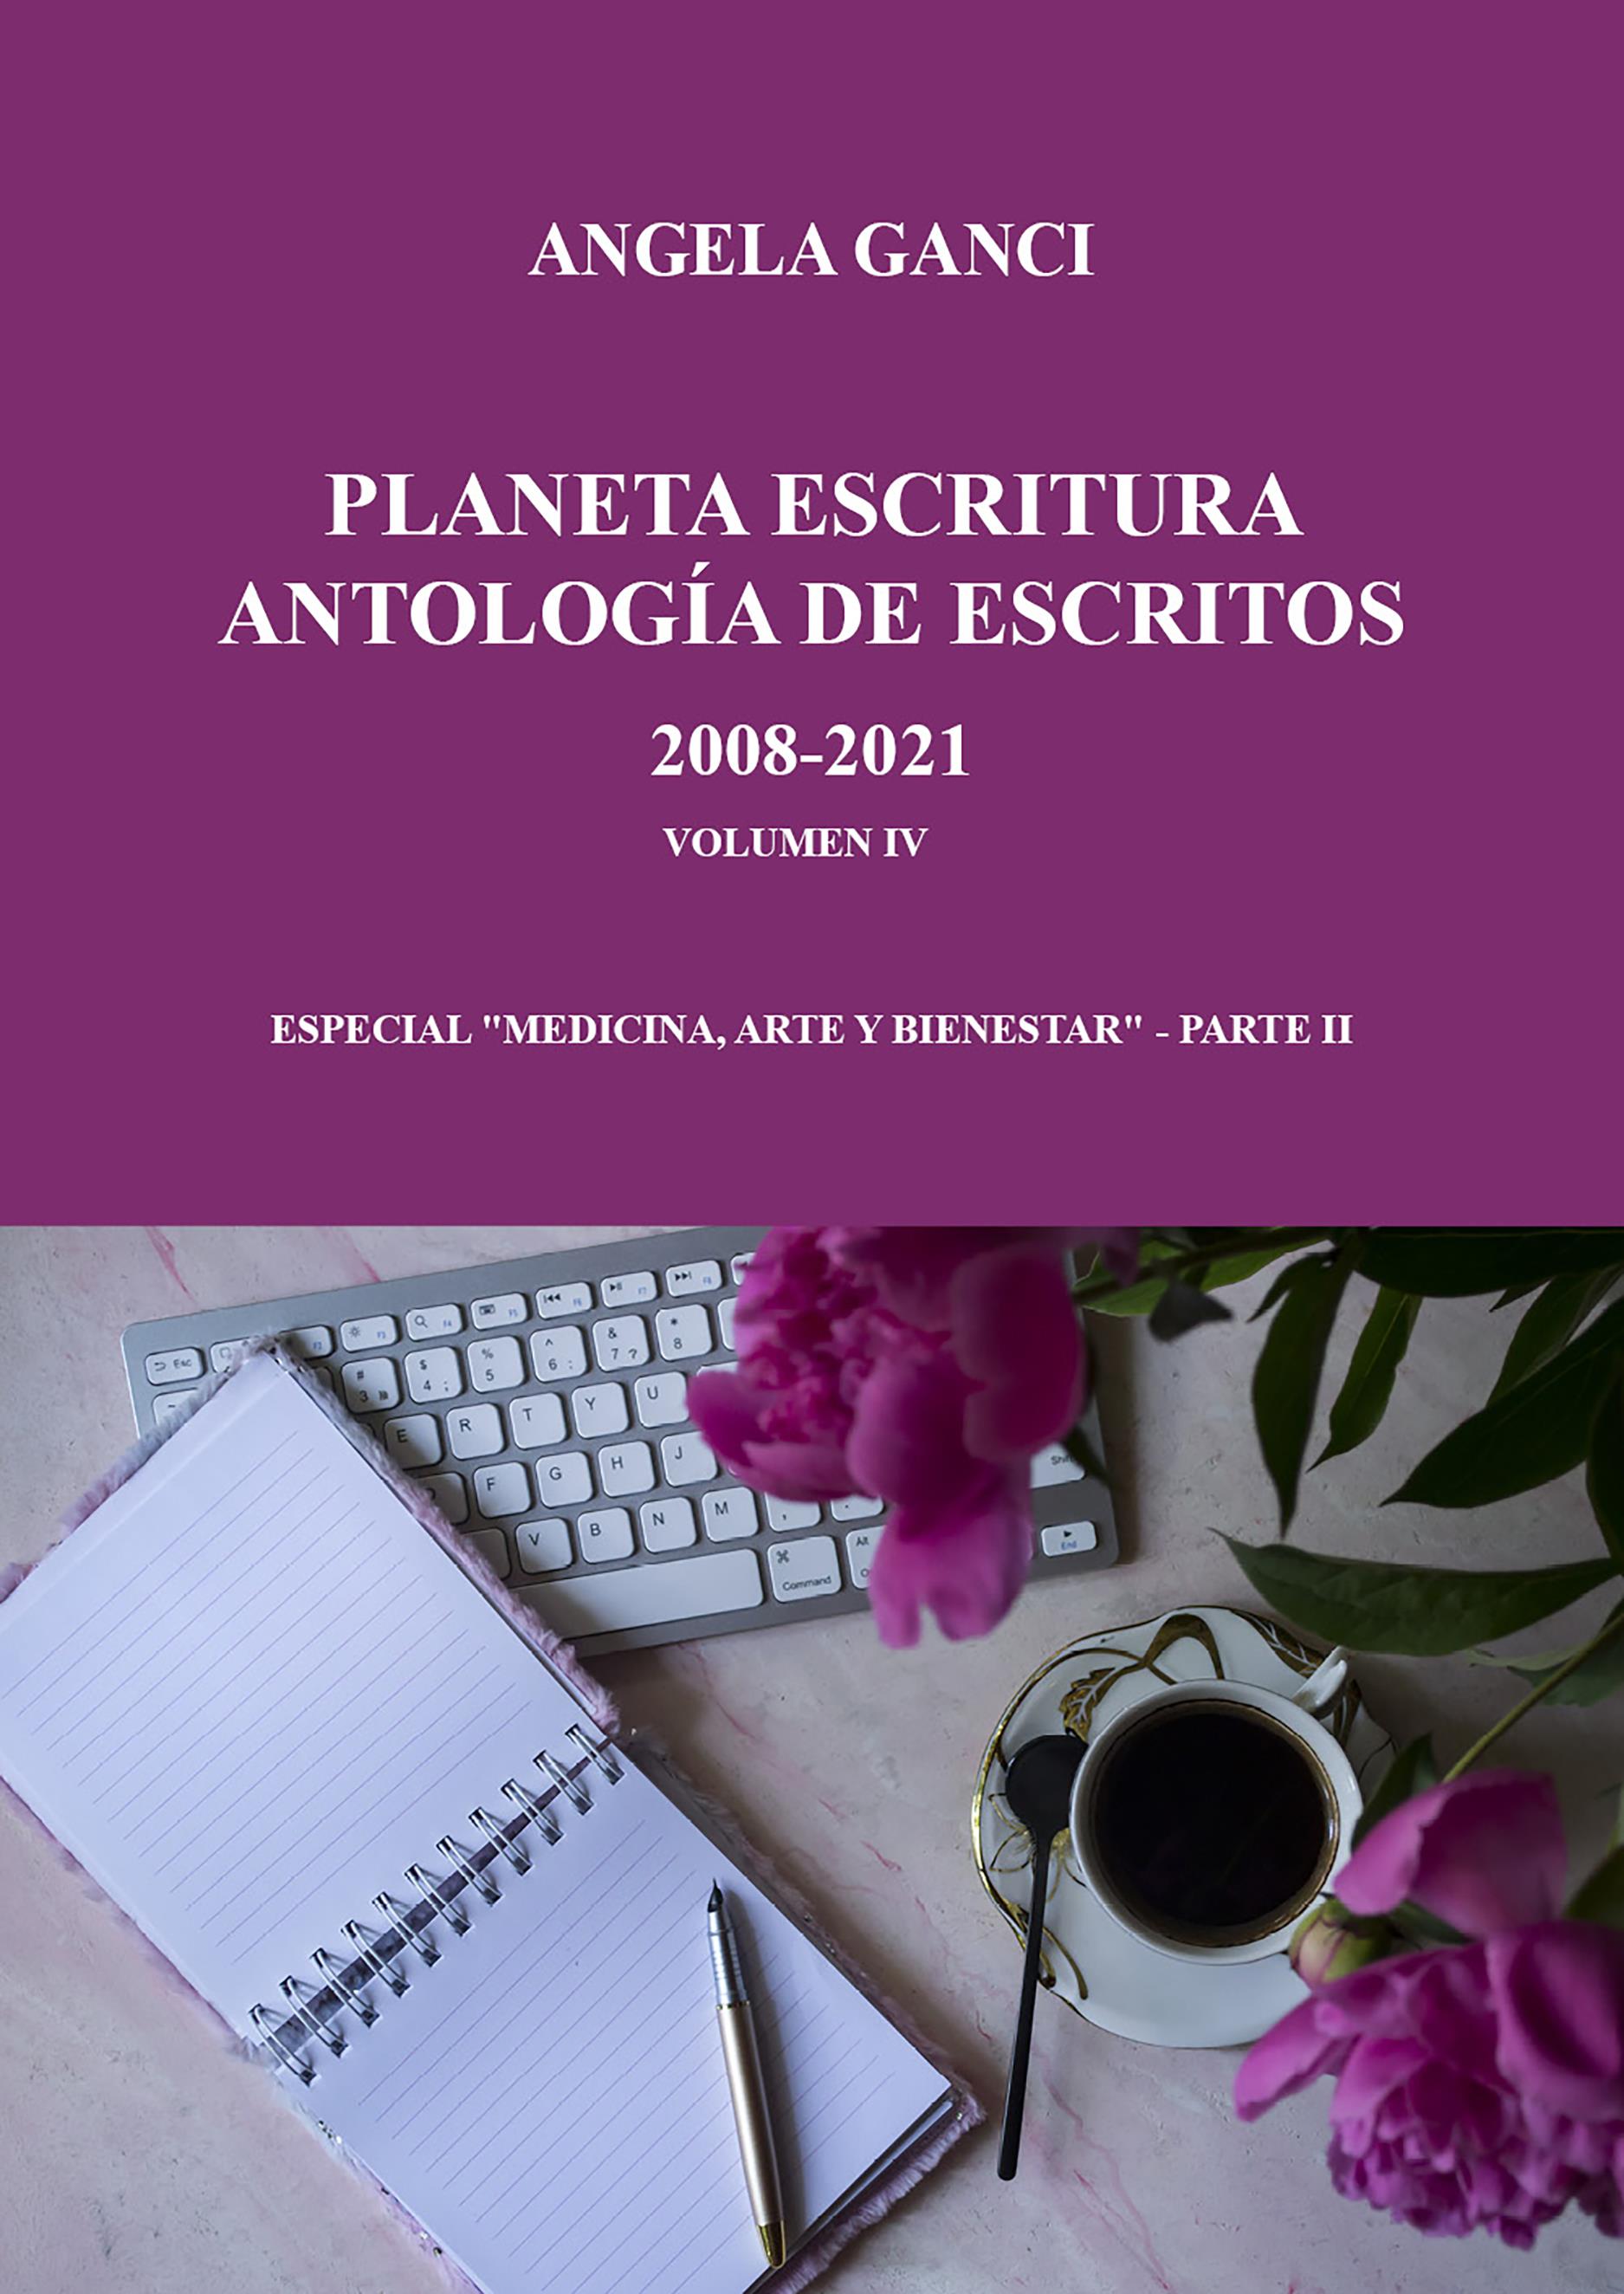 Planeta escritura antología de escritos 2008-2021 volumen iv especial "Medicina, arte y biene-star" - Parte II